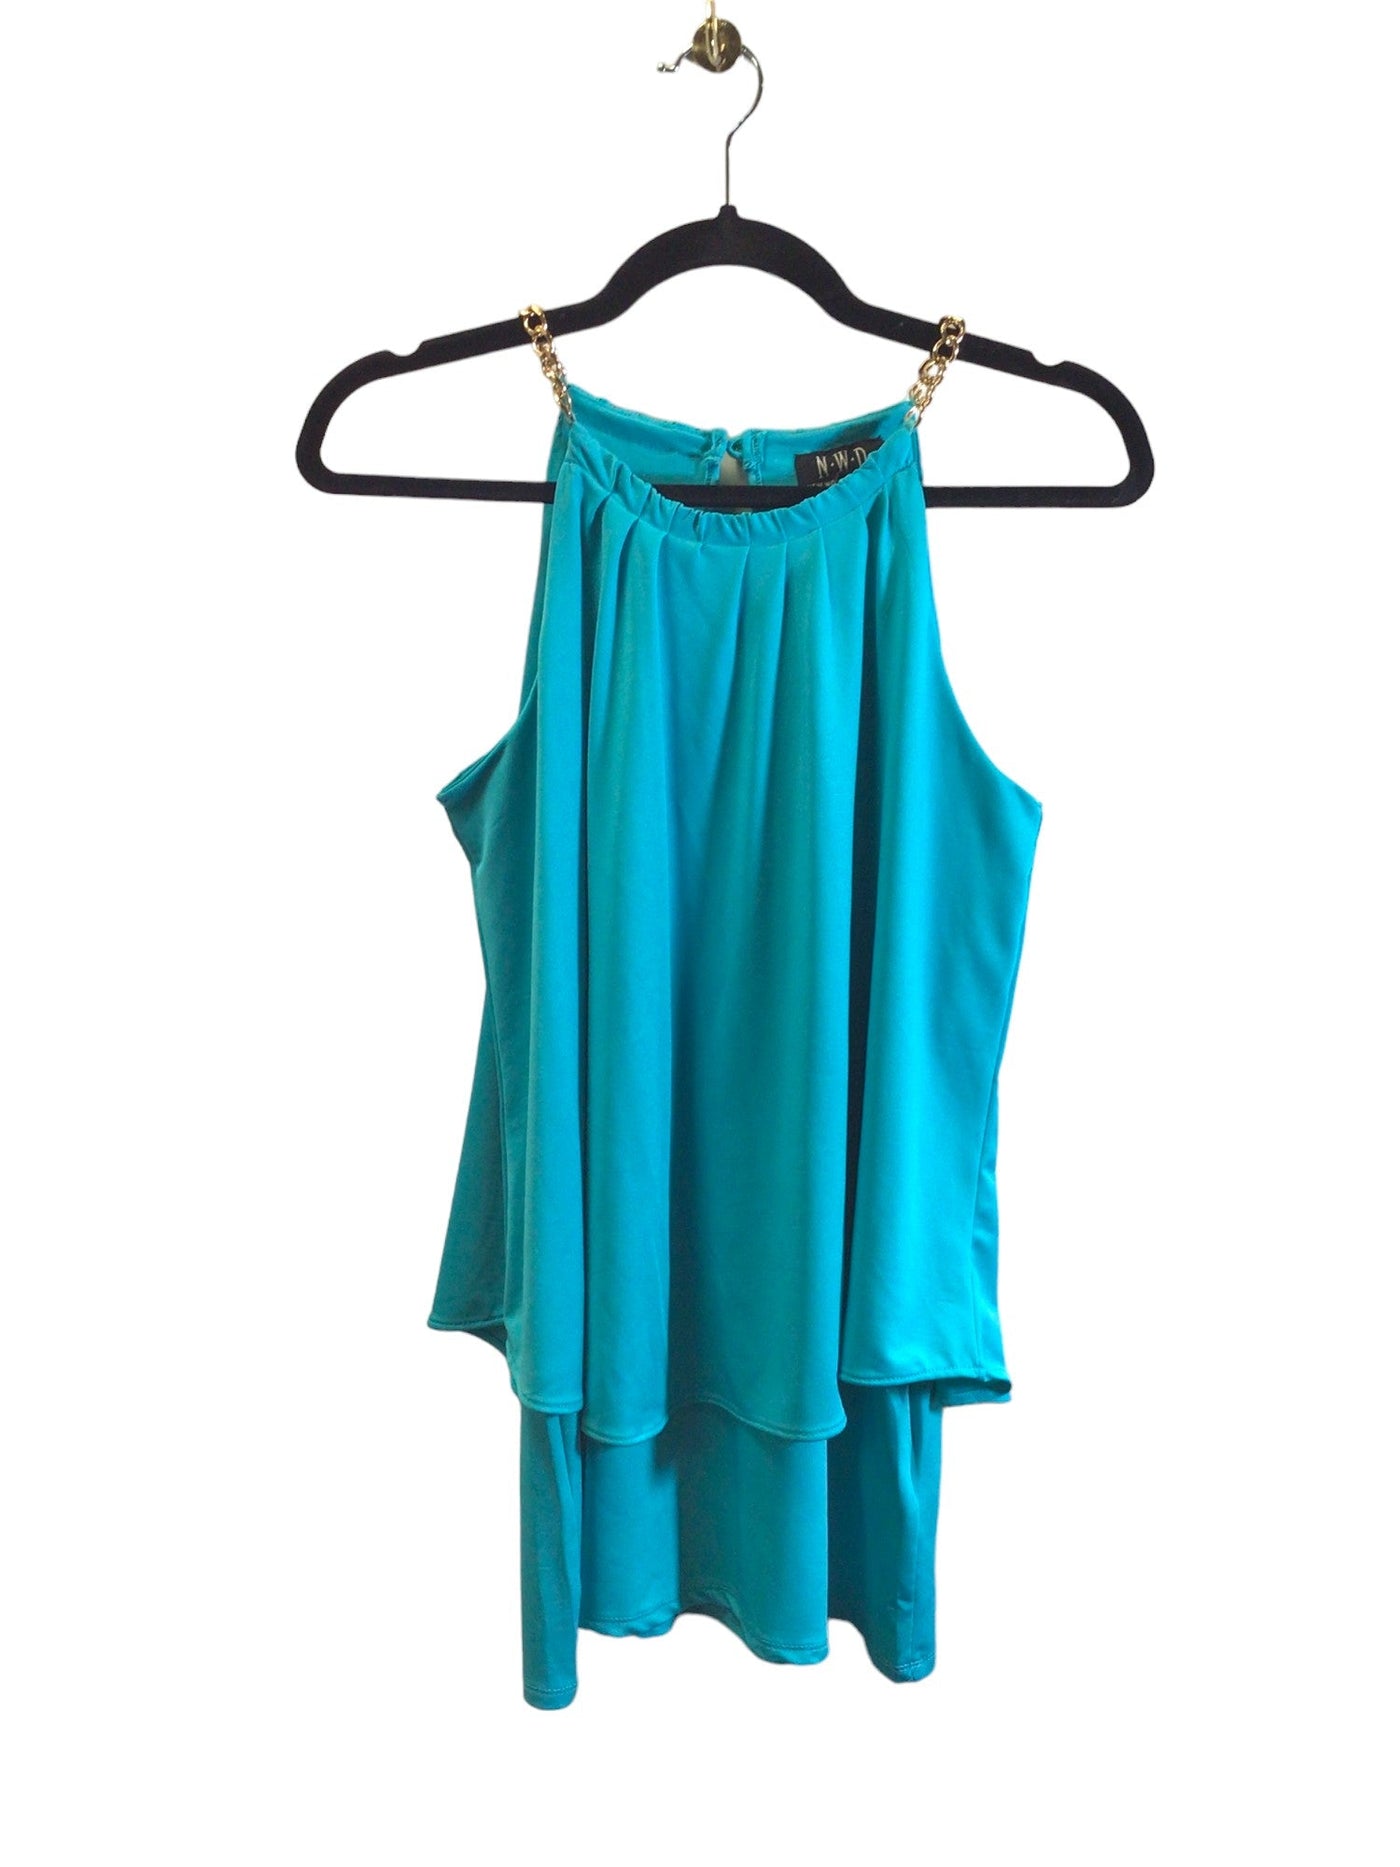 NWD Women Blouses Regular fit in Blue - Size S | 13.25 $ KOOP